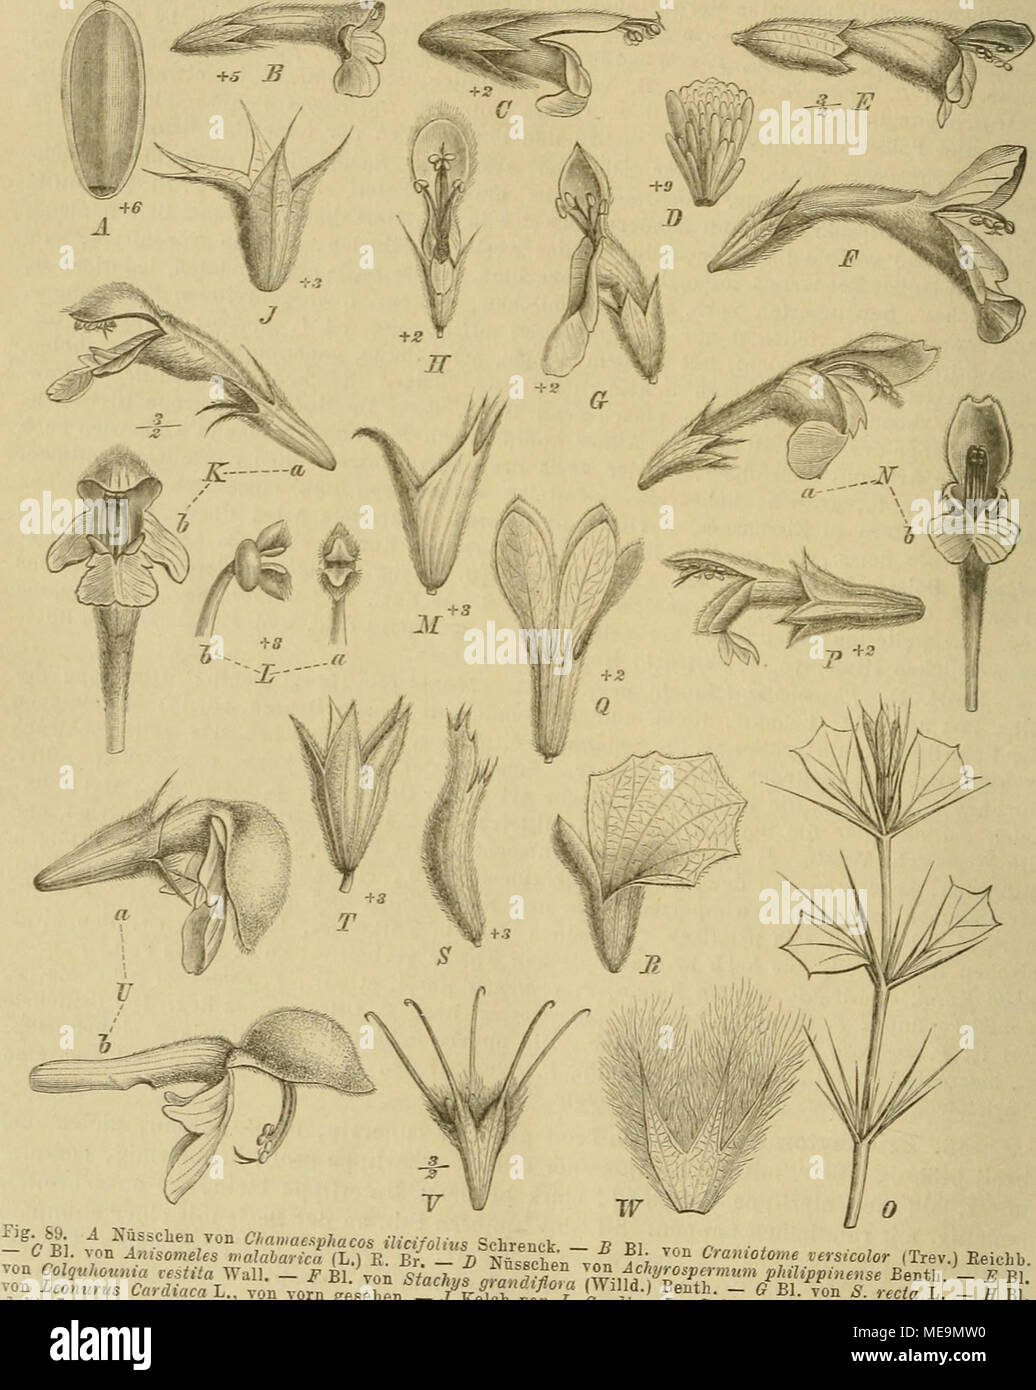 . Die NatÃ¼rlichen Pflanzenfamilien : nebst ihren Gattungen und wichtigeren Arten, insbesondere den Nutzpflanzen . ^^n Leonurus CardiÃ¤caCVon vorn gesehen 7LTr'^'^''V&quot; ^^^ l Be^th. - (? Bl.TonT dÂ« m Leers, a von der Seite, 6 vonfrrgeseh7n -5f Stb von /&quot;I'^'^'t''-' SeiteBansicht. - A&quot; El. .on Galeopsis -M Jielch von medemannia orientalis Fifch et ilev - V Rl^- ''f'Â«.^-eers, a Torderansicht, 6 Seitenansicht   vorn gesehen. - 0 Zweig yon ia^oc/,,7 Â« cÂ«Â«LfâTB7ntf l%fÂ°&quot;&quot;&quot;&quot;' P^finreum L., a von der Seite, 6 von IyÃiVe '^r&quot;&quot;&quot;-) f'^Ty. &quot;&q Stock Photo